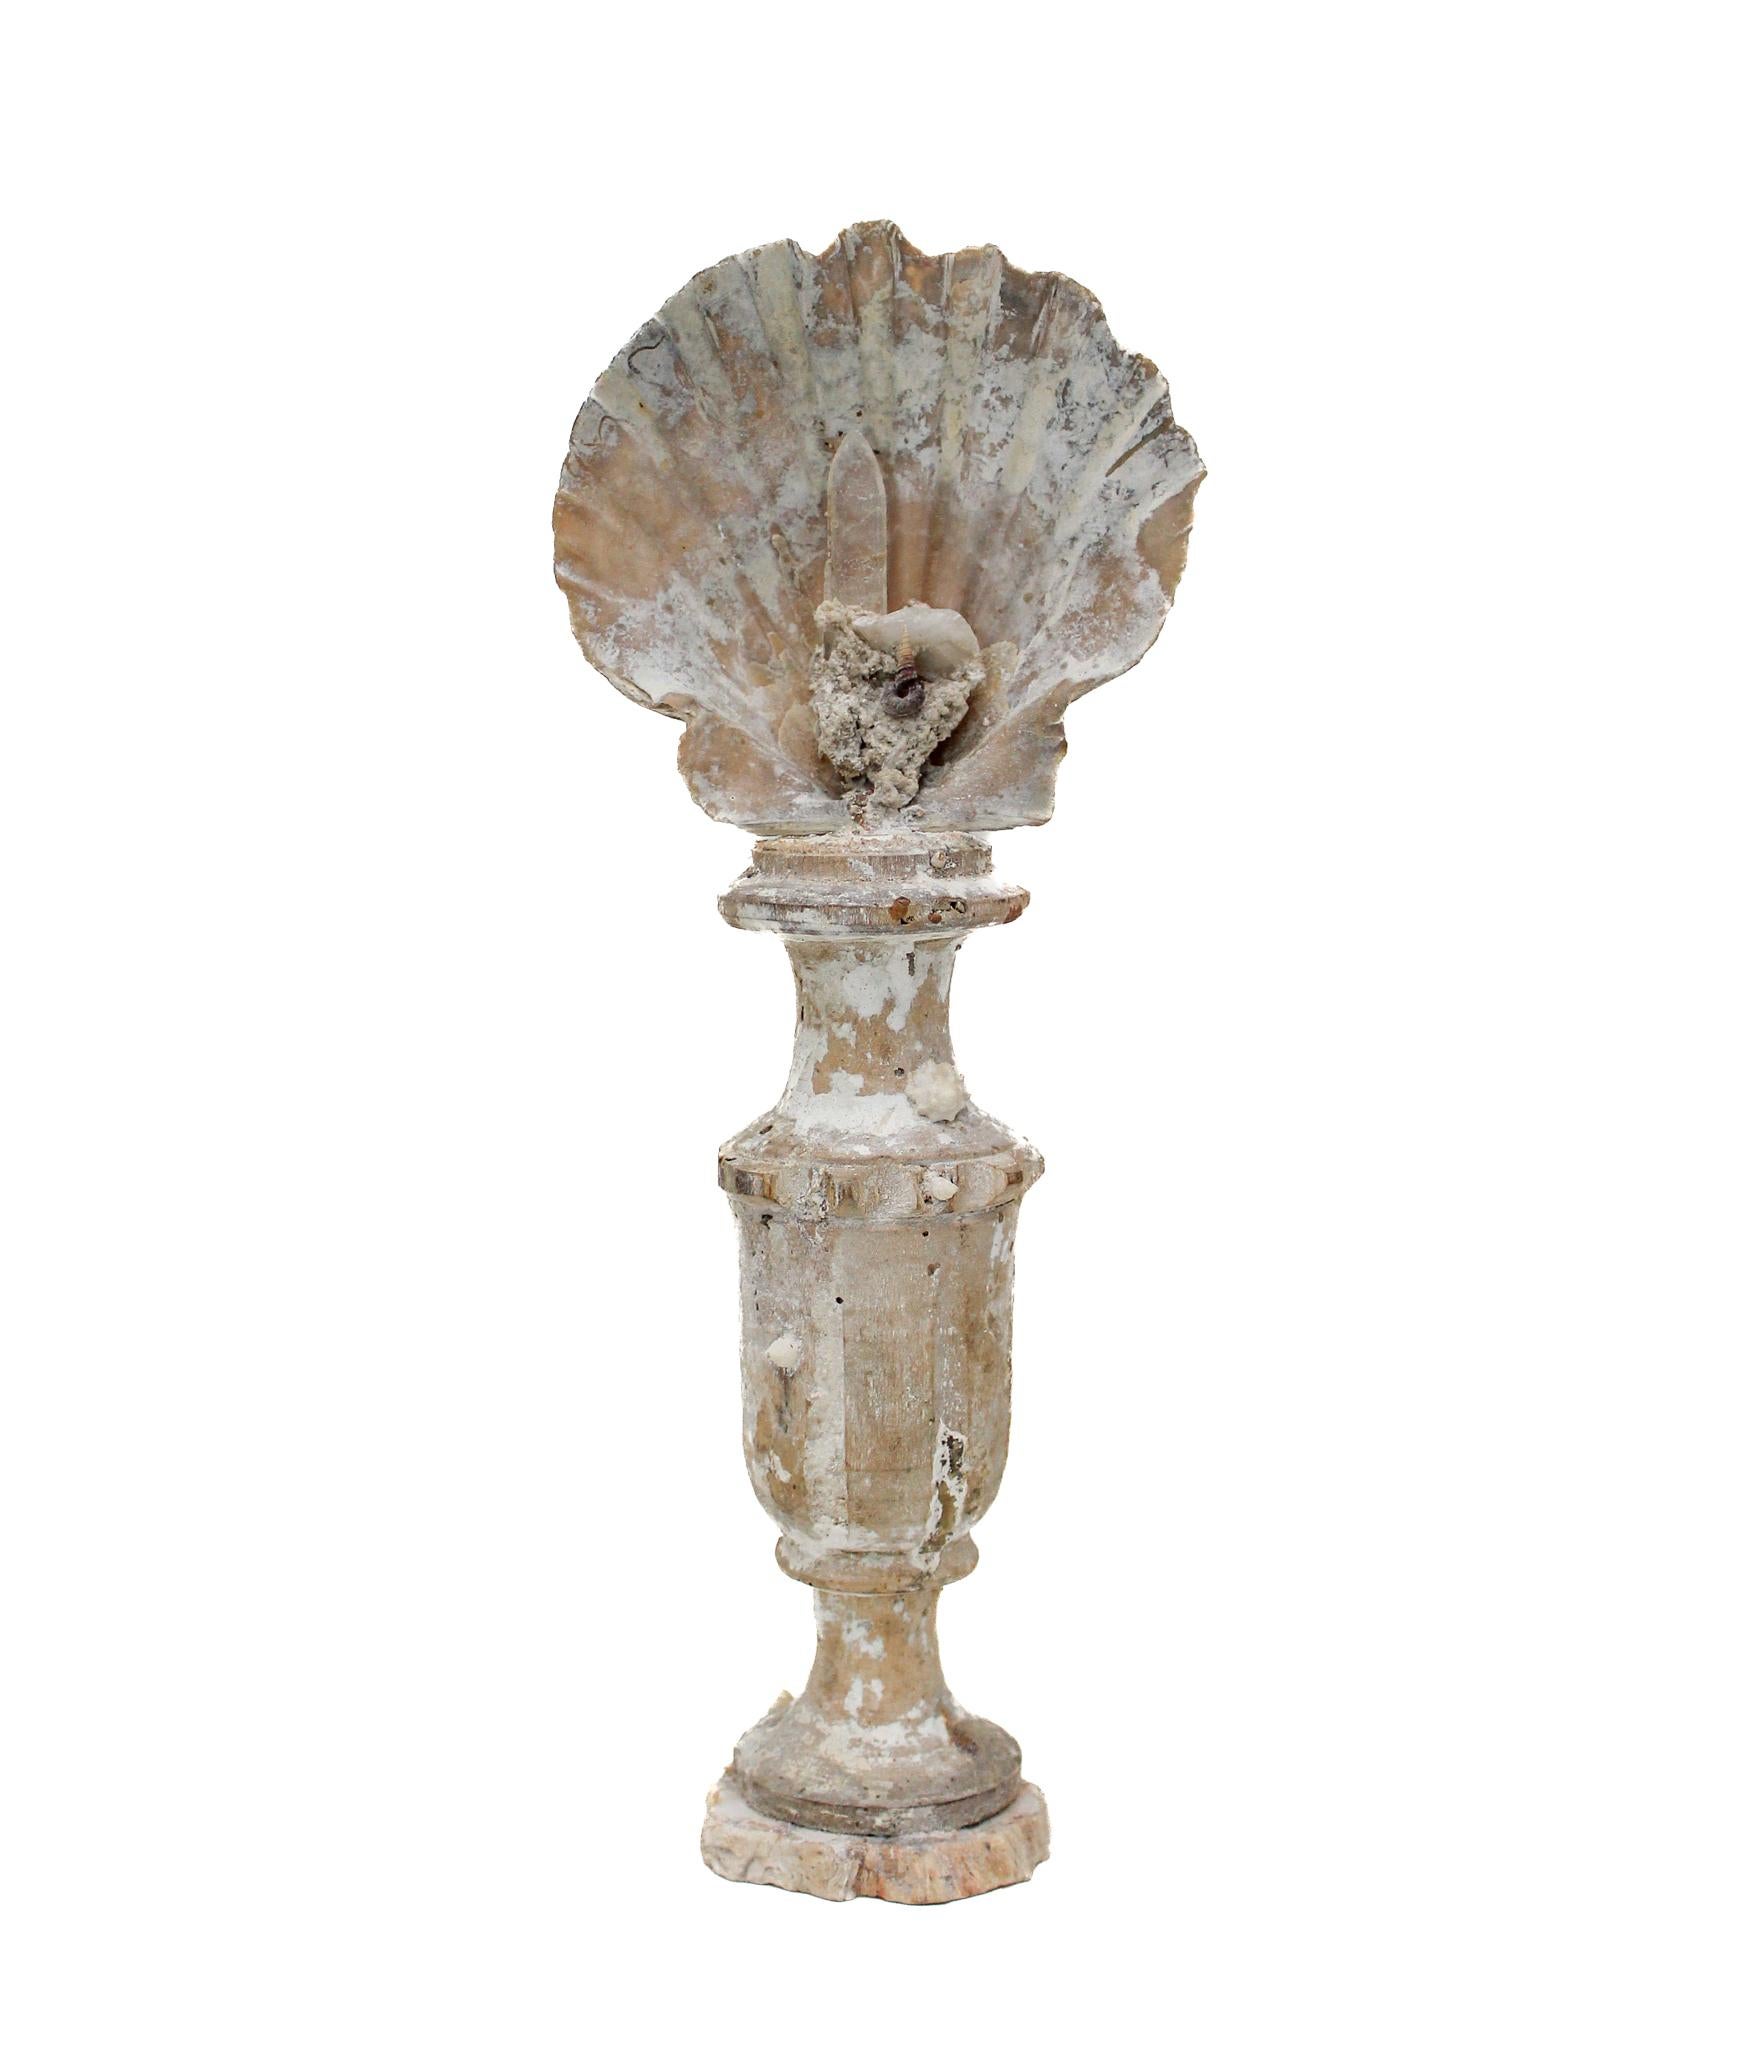 Italienische Vase aus dem 17. Jahrhundert mit einer Chesapecten-Muschel, einer Kristallspitze und fossilen Muscheln auf einem Sockel aus versteinertem Holz.

Dieses Fragment stammt aus einer Kirche in Florenz. Es wurde gefunden und vor dem